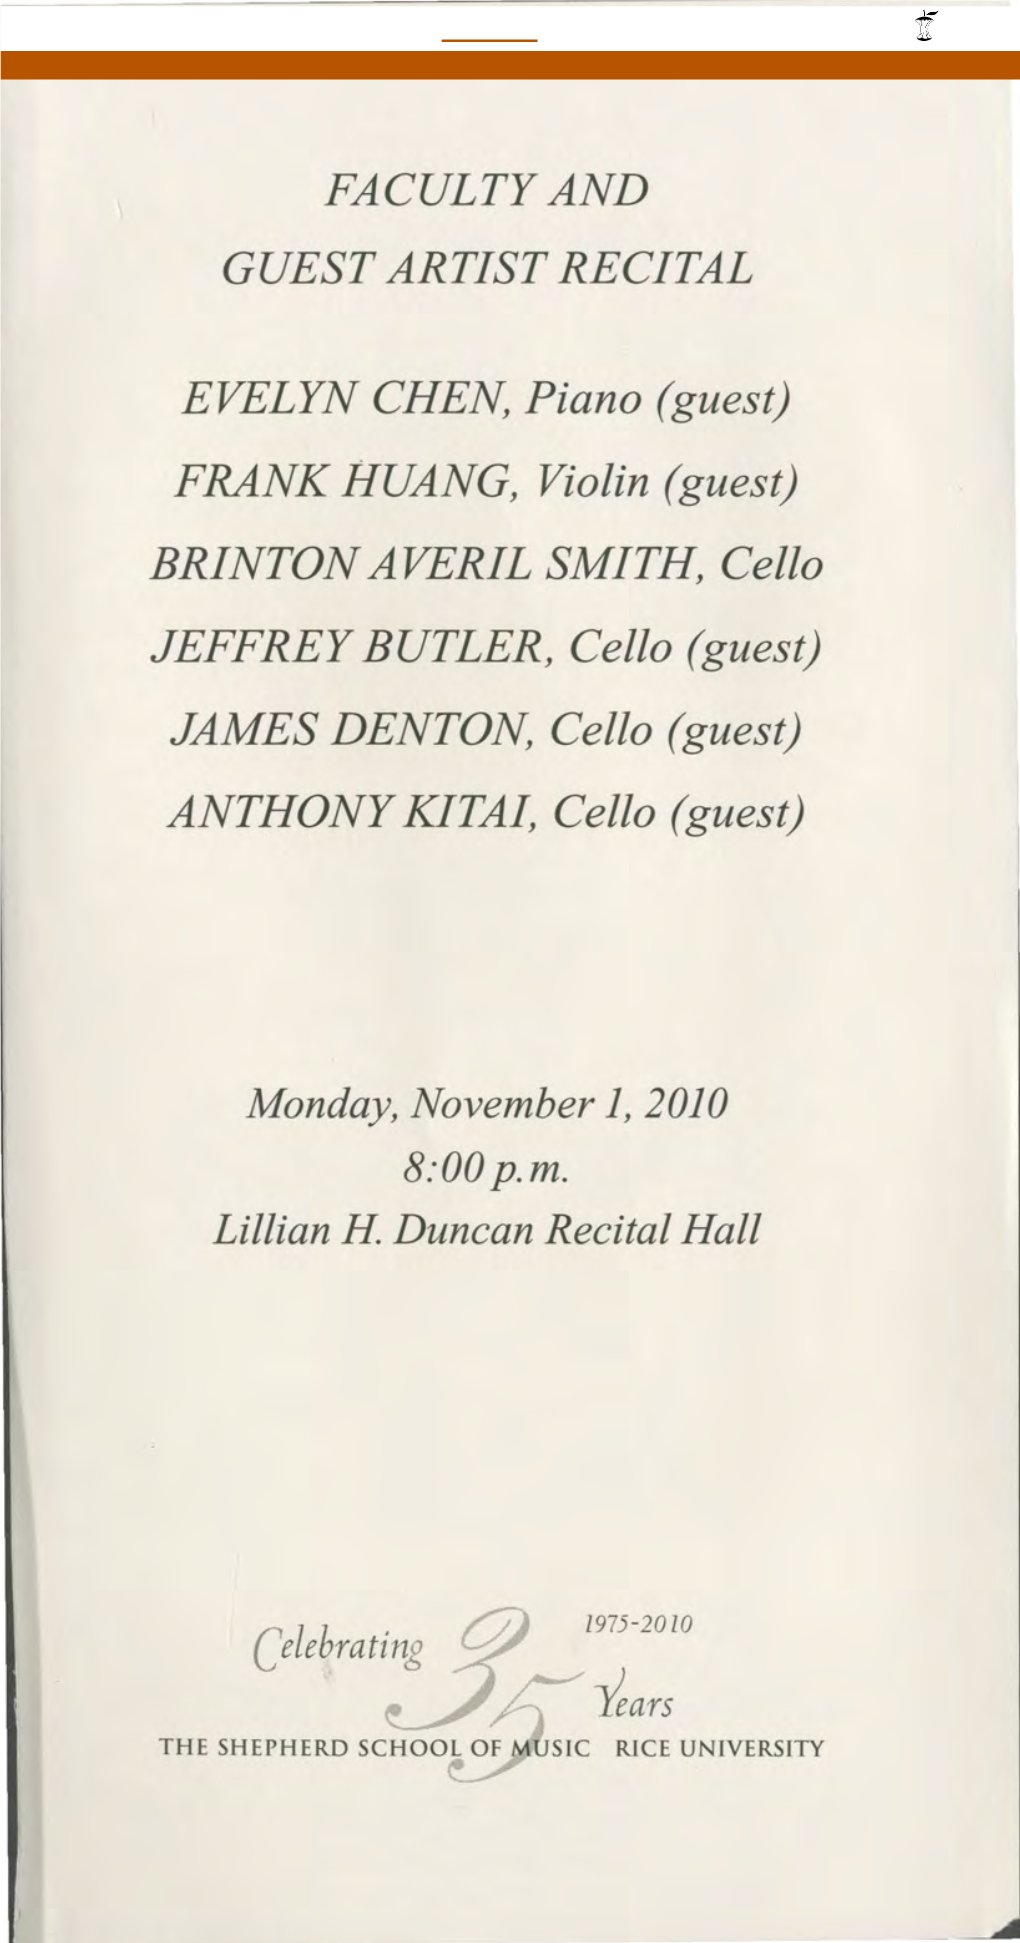 FRANK HUANG, Violin (Guest) BRINTON AVERIL SMITH, Cello JEFFREY BUTLER, Cello (Guest) JAMES DENTON, Cello (Guest) ANTHONY KITA/, Cello (Guest)